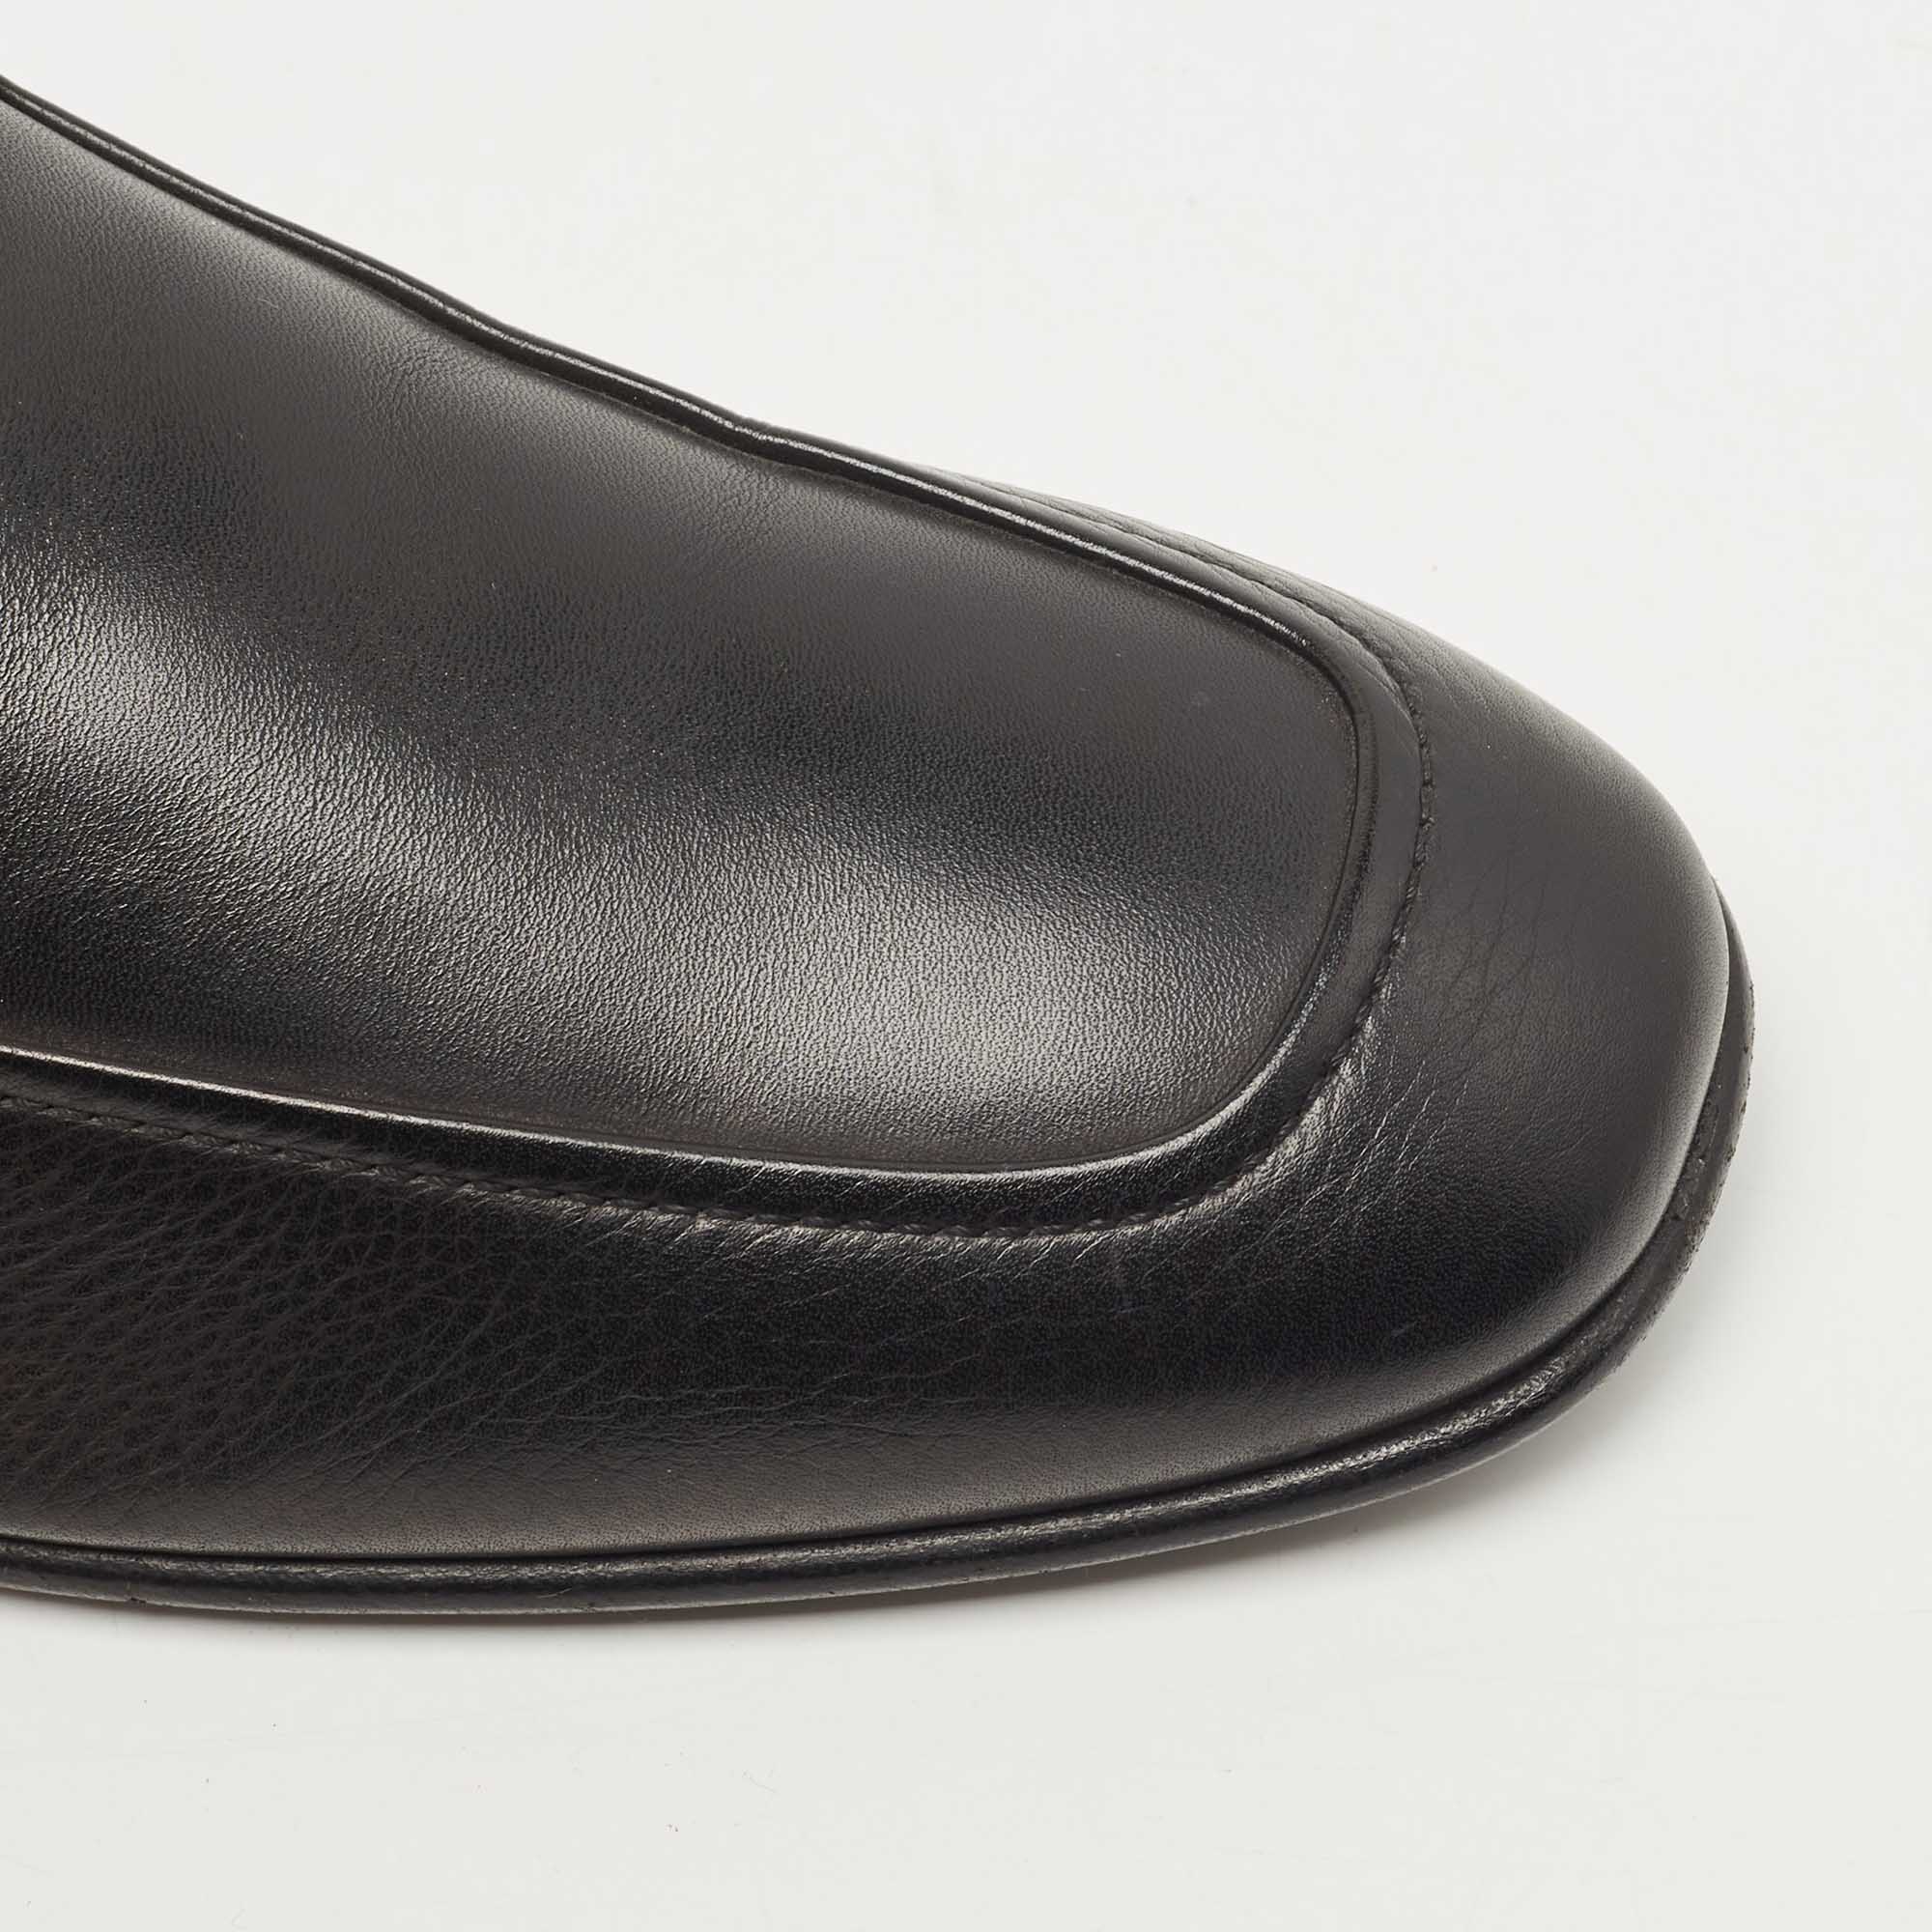 Salvatore Ferragamo Black Leather Gancini Loafers Size 44.5